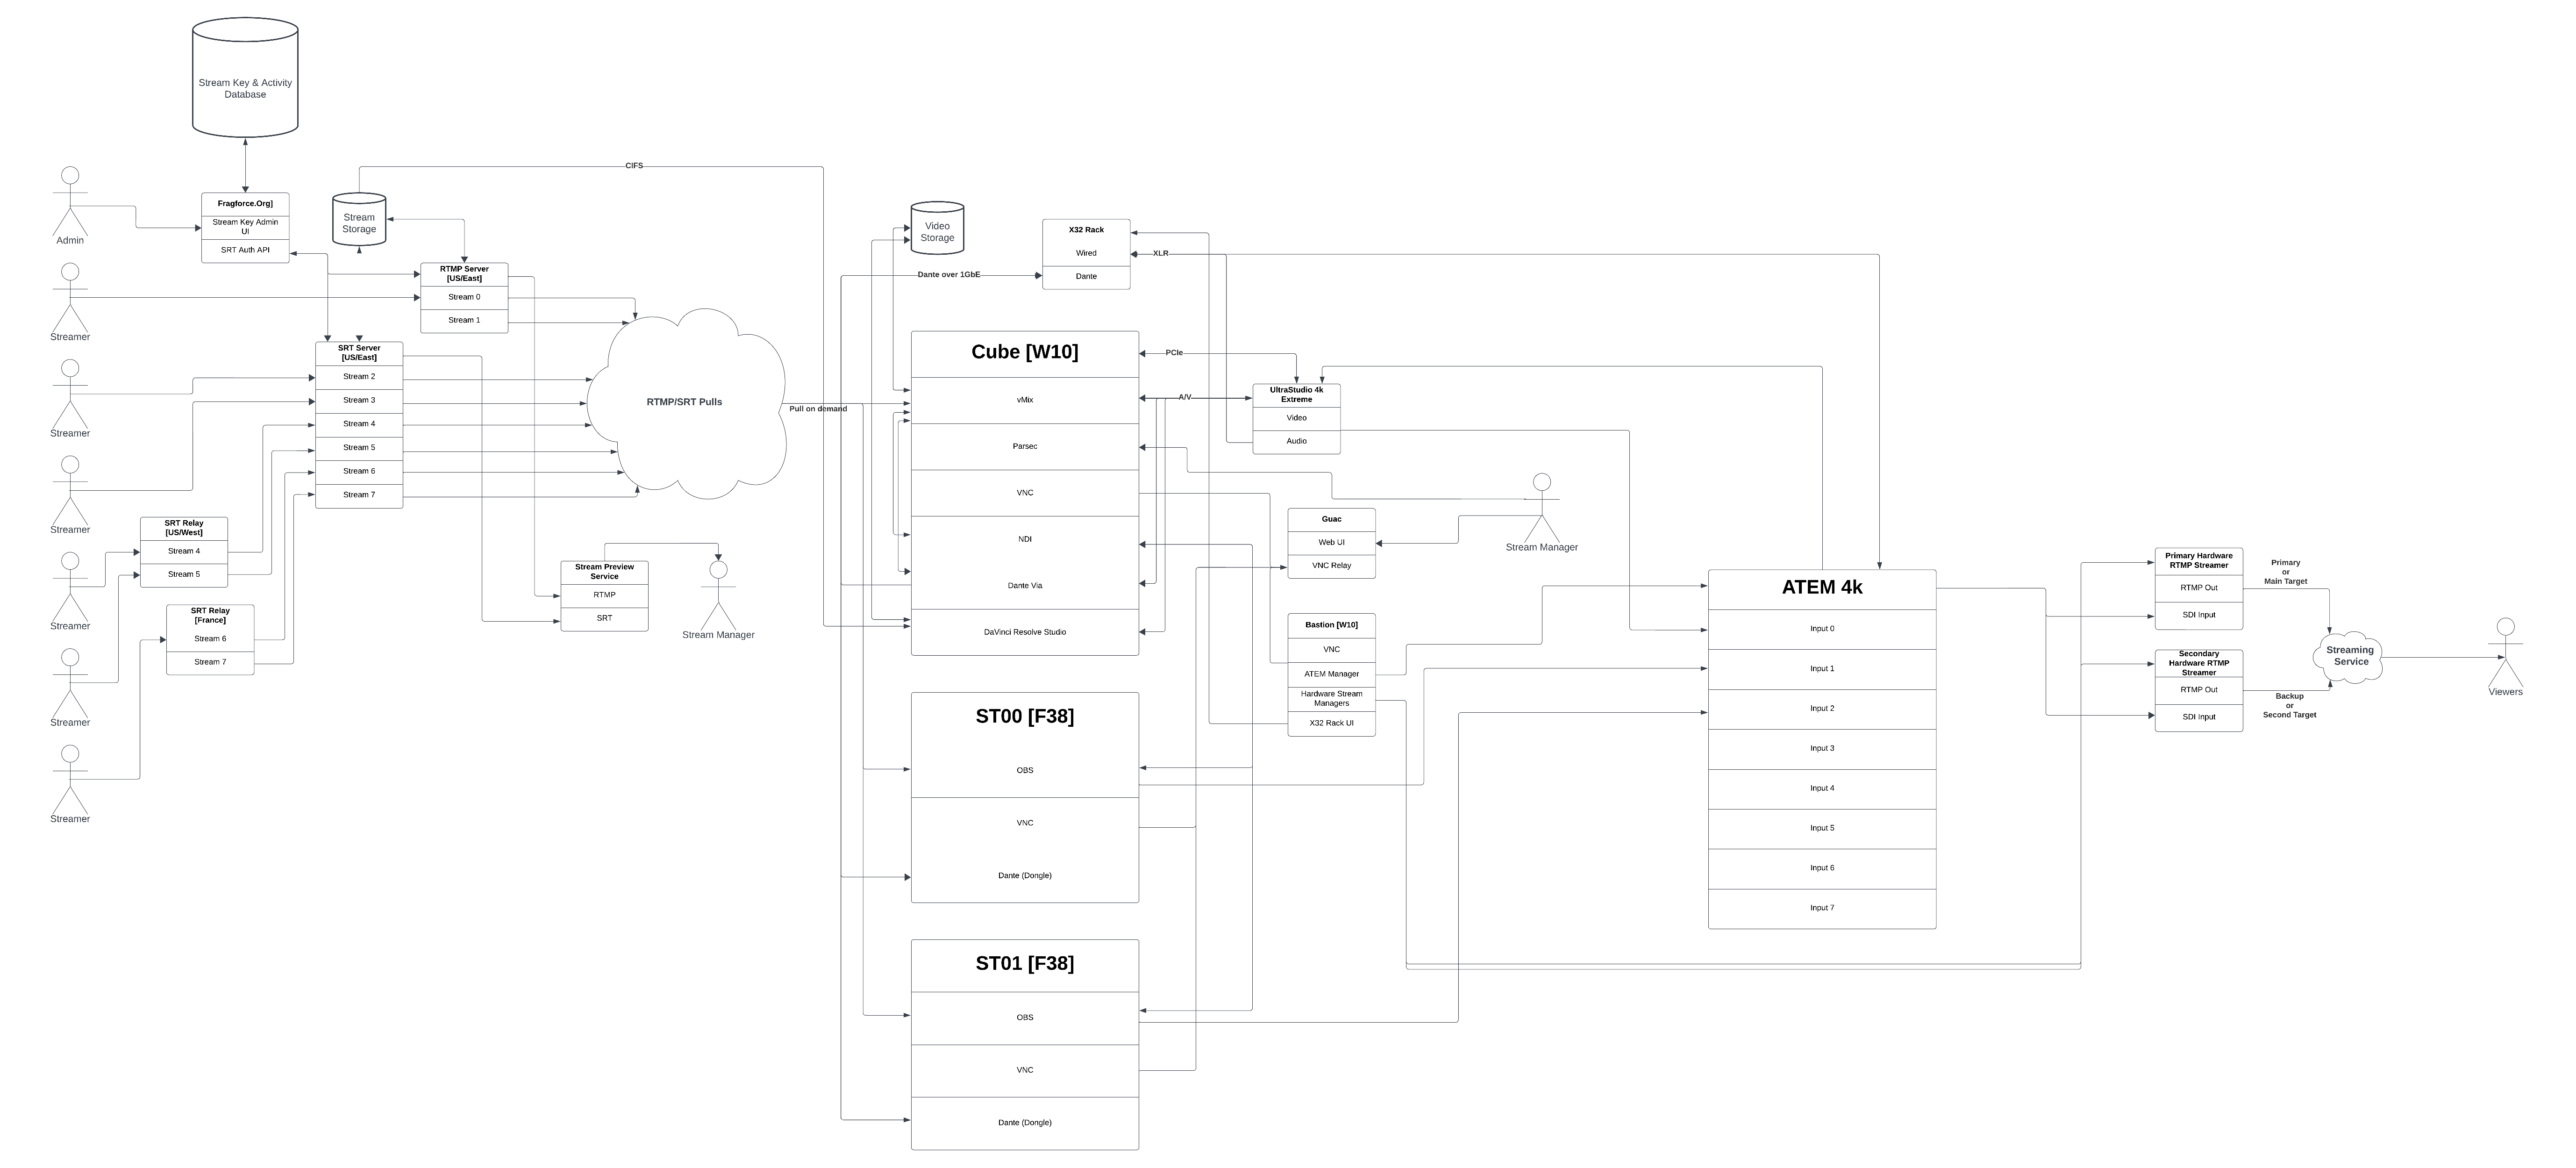 Stream infra diagram